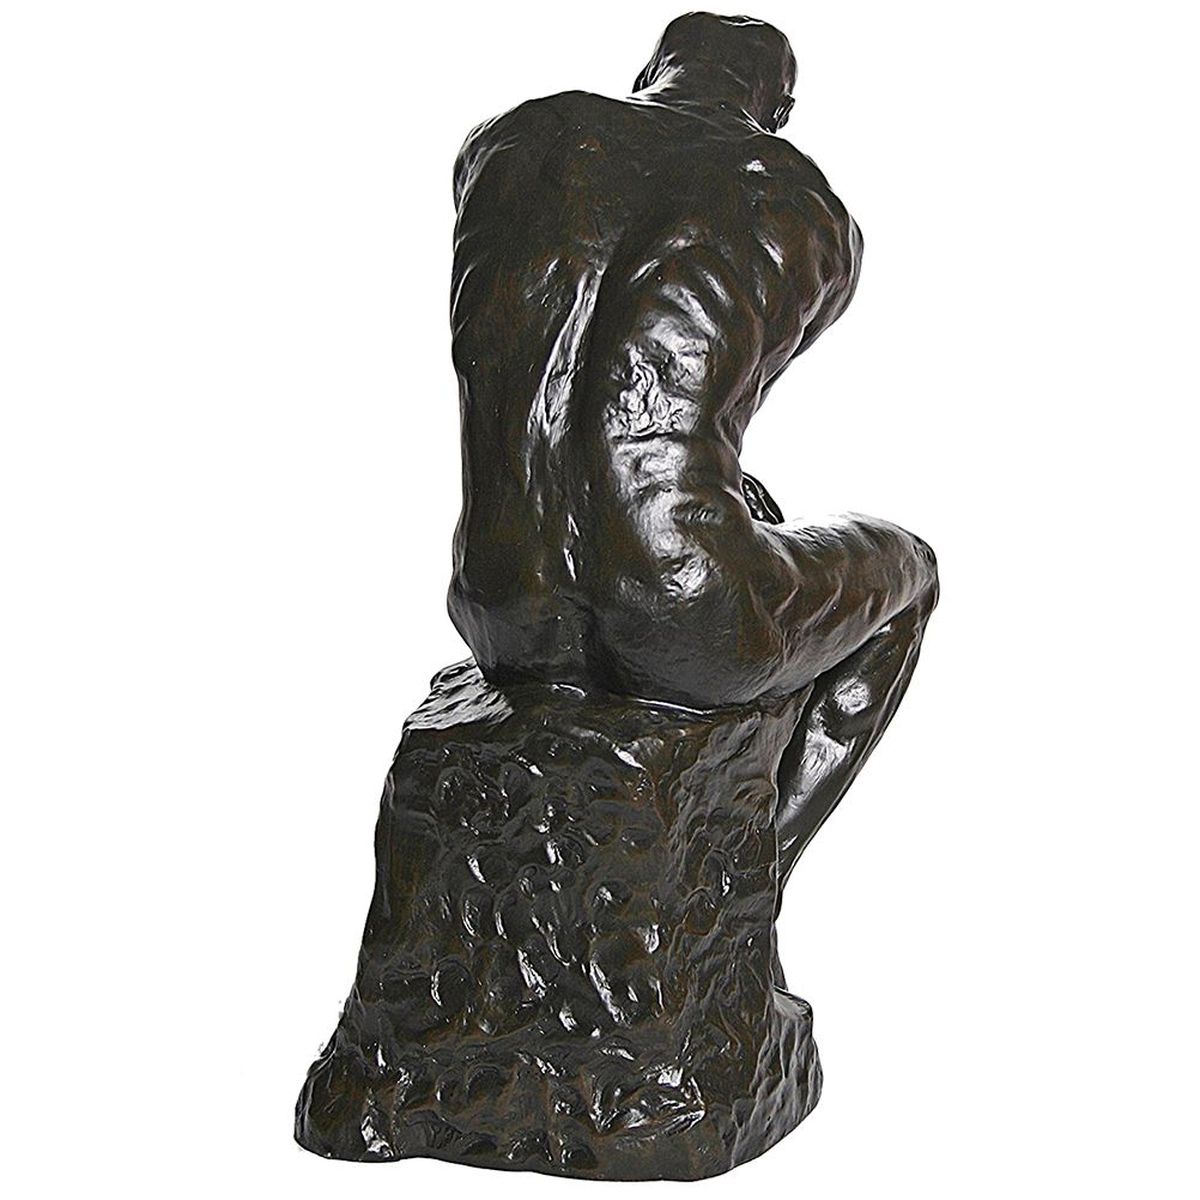 Figurine reproduction Le Penseur de Rodin 37 cm